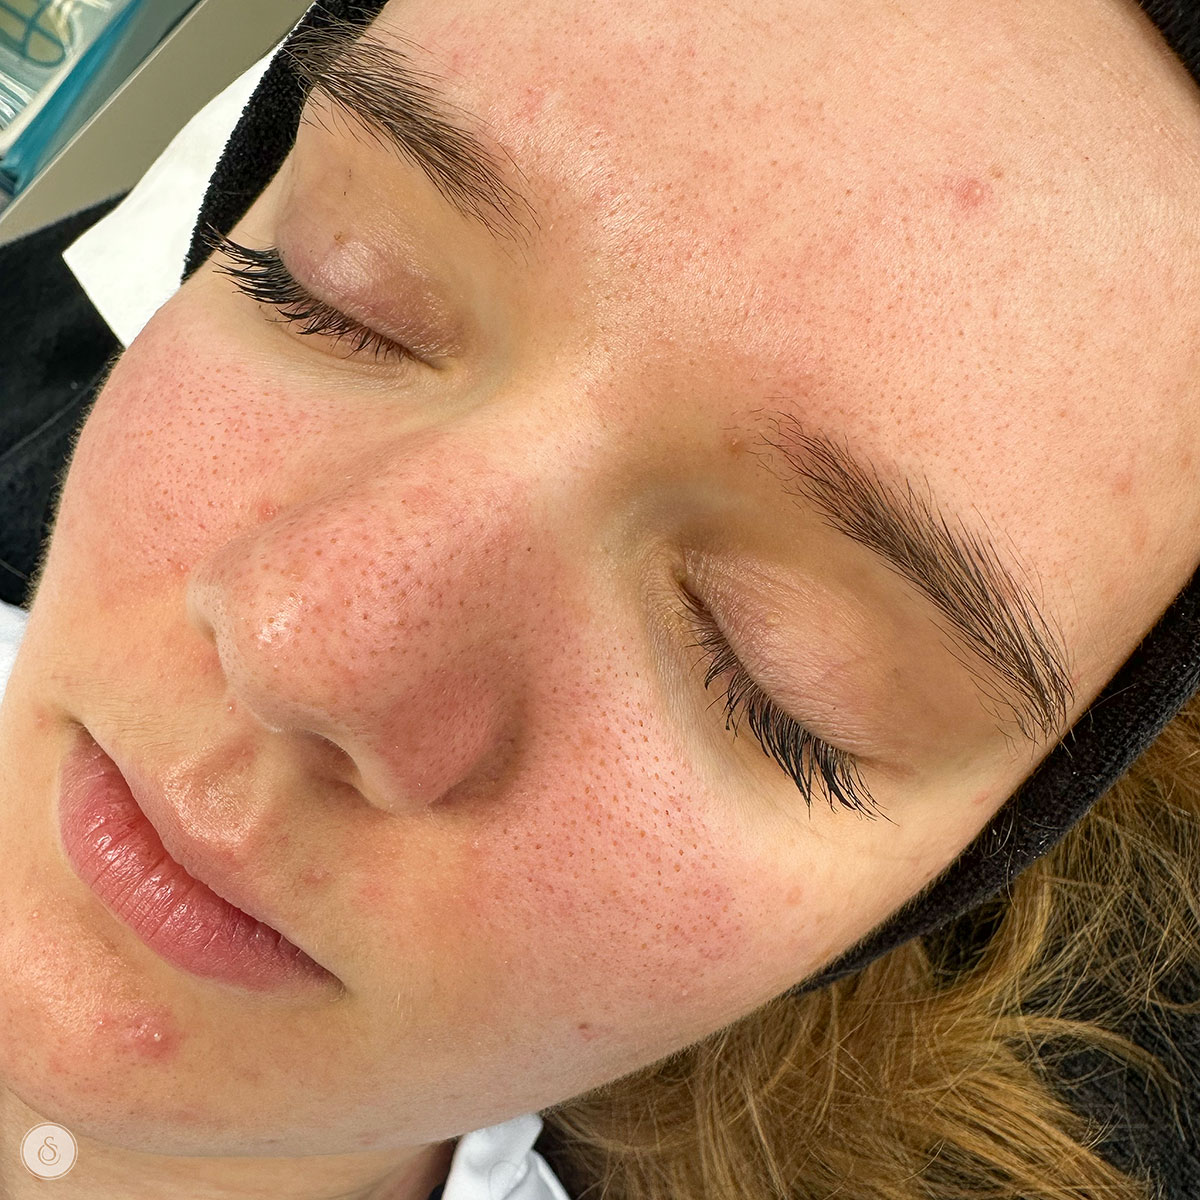 Clinique Sarasin visage pores dilatés